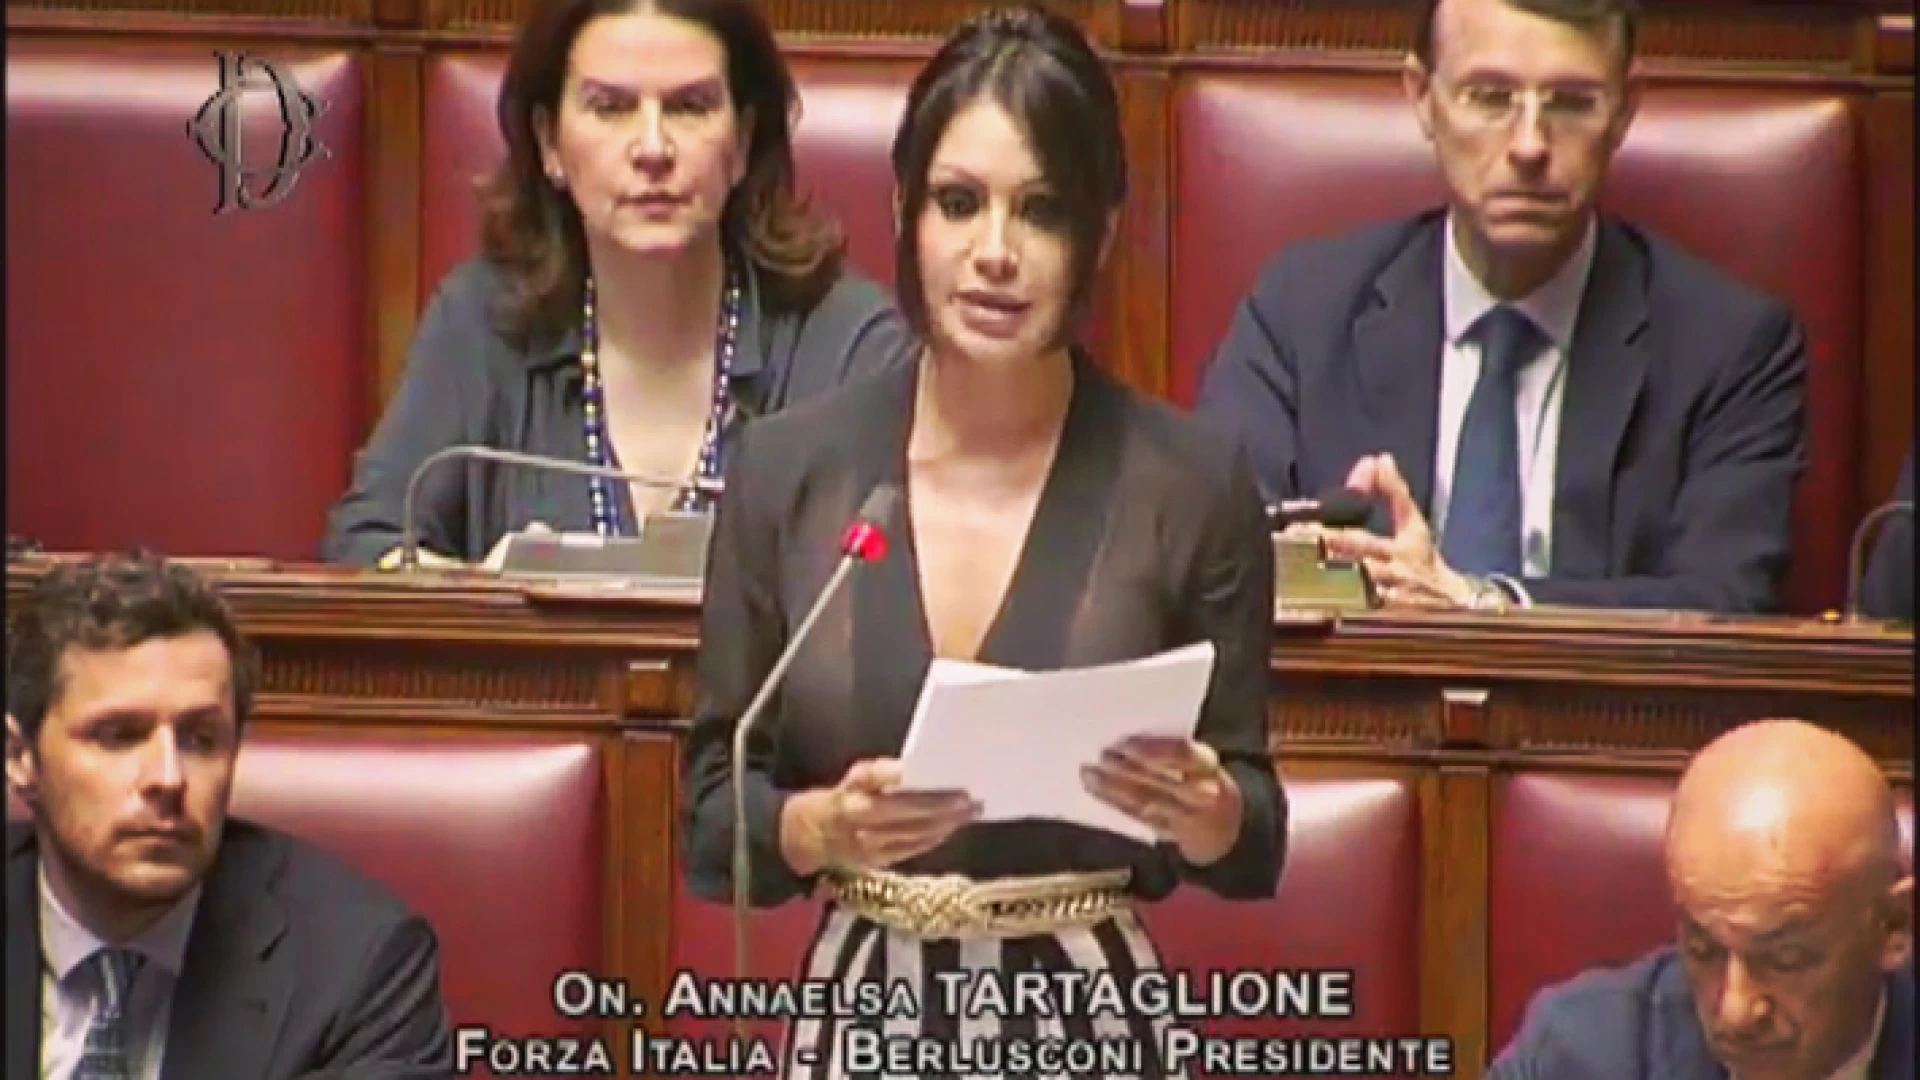 Regolare svolgimento dell’anno scolastico. La deputata Tartaglione presenta emendamento in commissione per la discussione sul Milleproroghe.